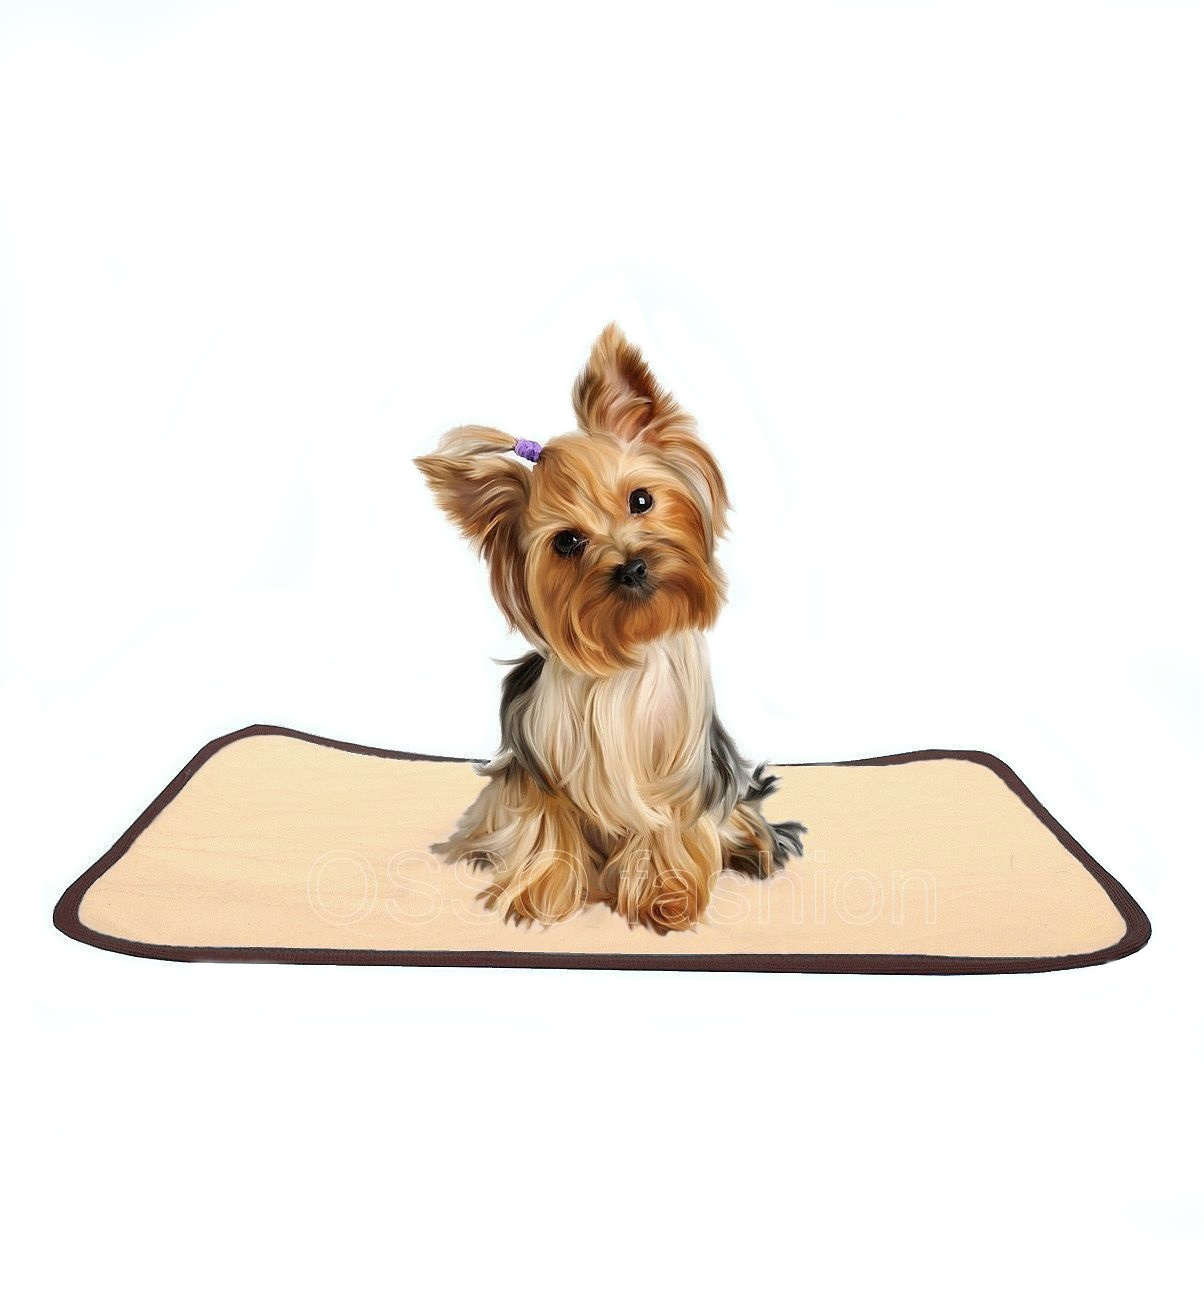 OSSO OSSO пеленка для собак многоразовая впитывающая (коричневая) (30*40 см) пеленка osso fashion для собак многоразовая впитывающая коричневая 70х90 см